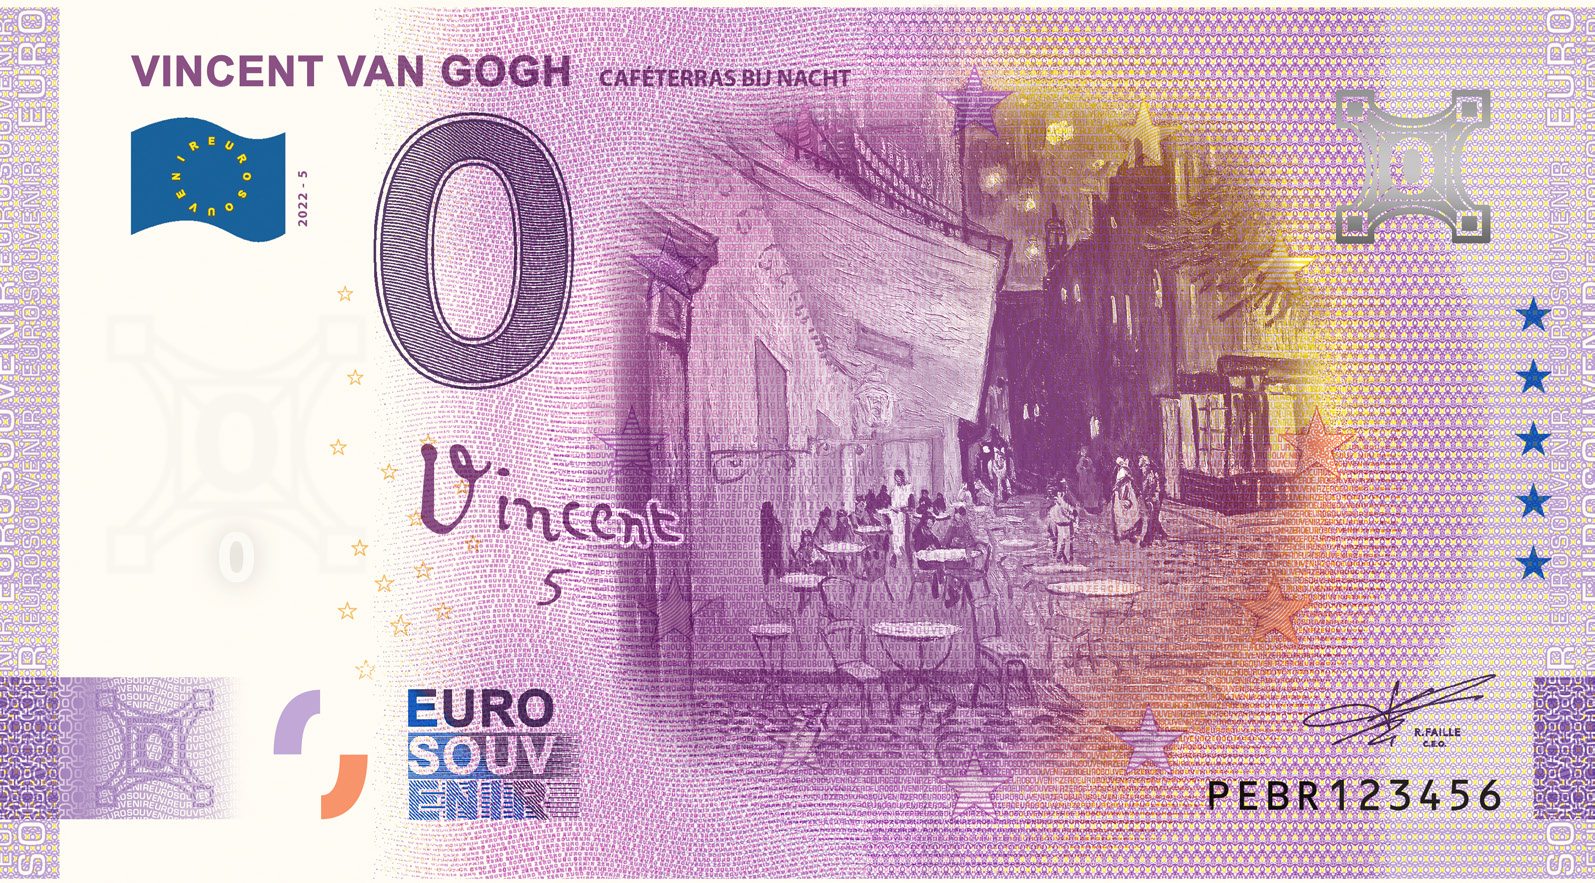 0 Euro biljet Nederland 2022 - Vincent van Gogh V Caféterras bij nacht